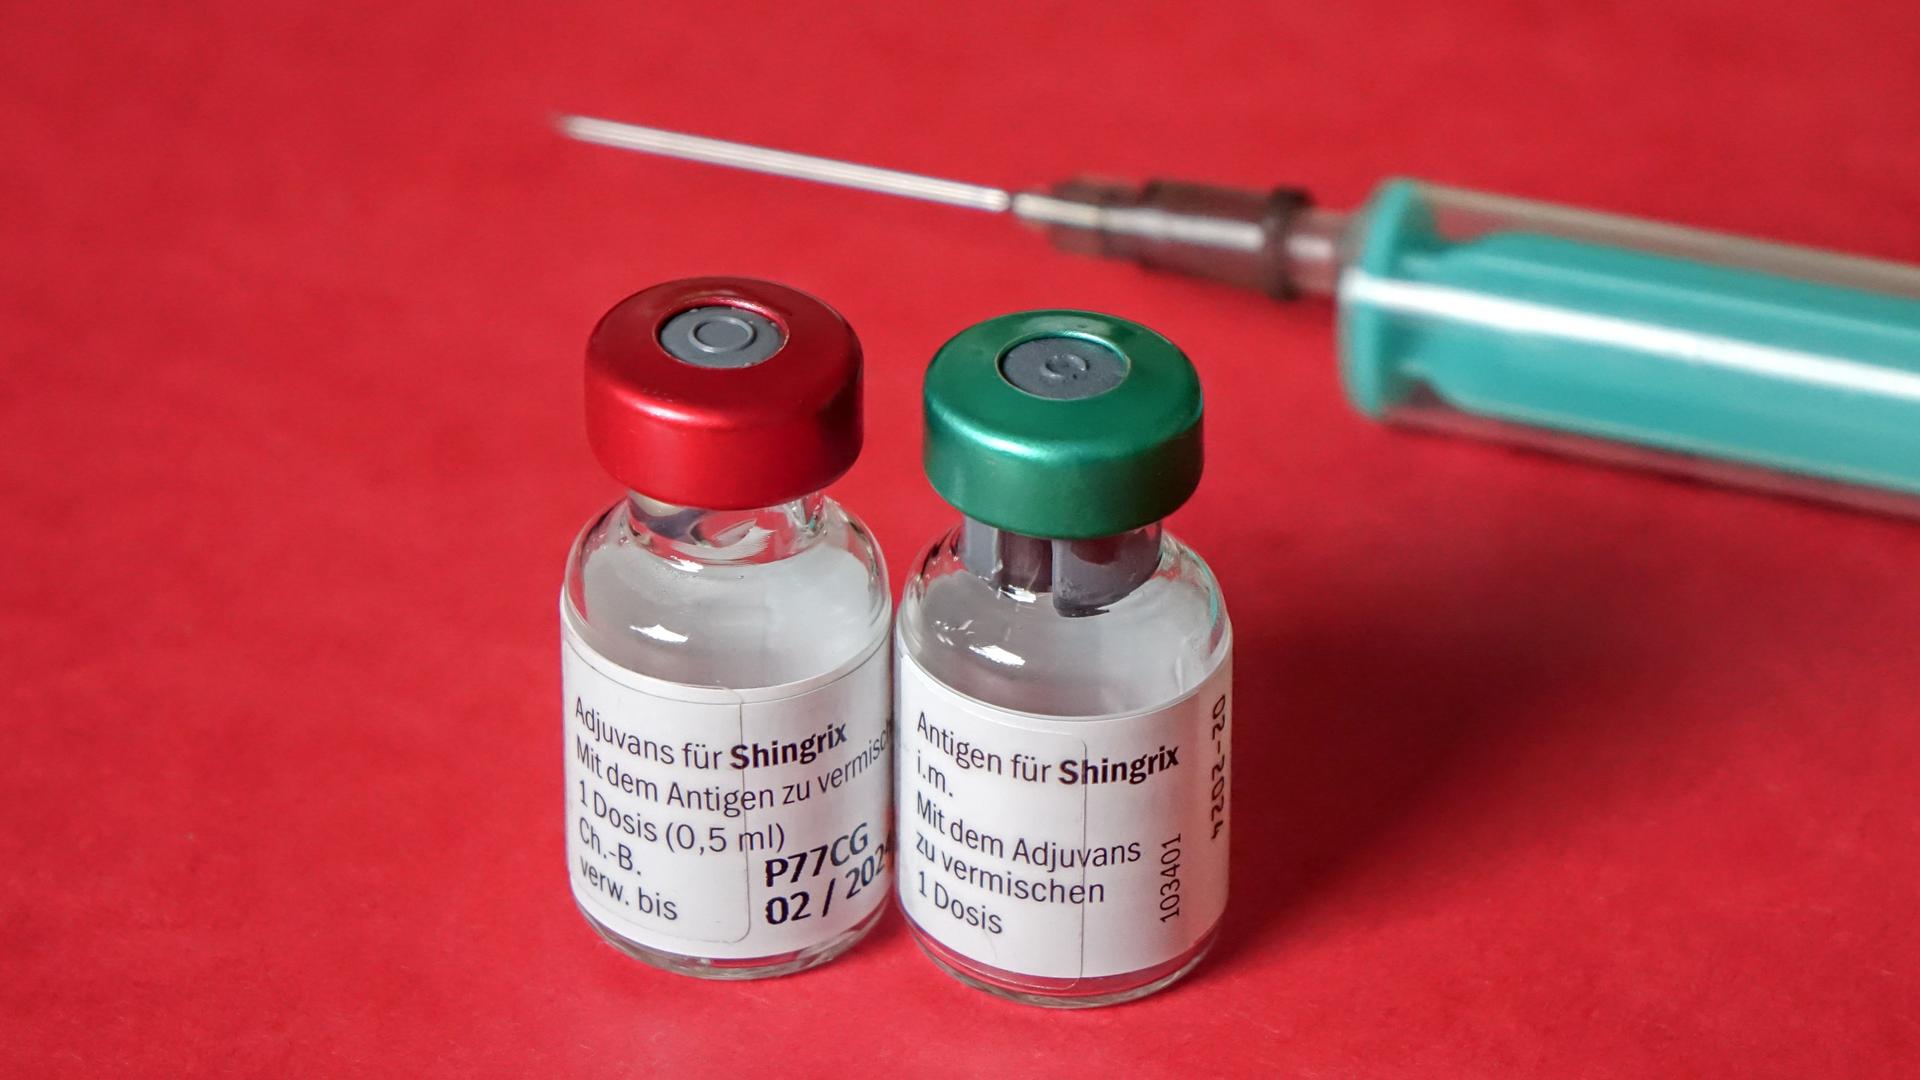 Herpes-Zoster-Impfstoff Shingrix bestehend aus zwei Durchstechflaschen mit Pulver Antigen und Suspension Adjuvans.